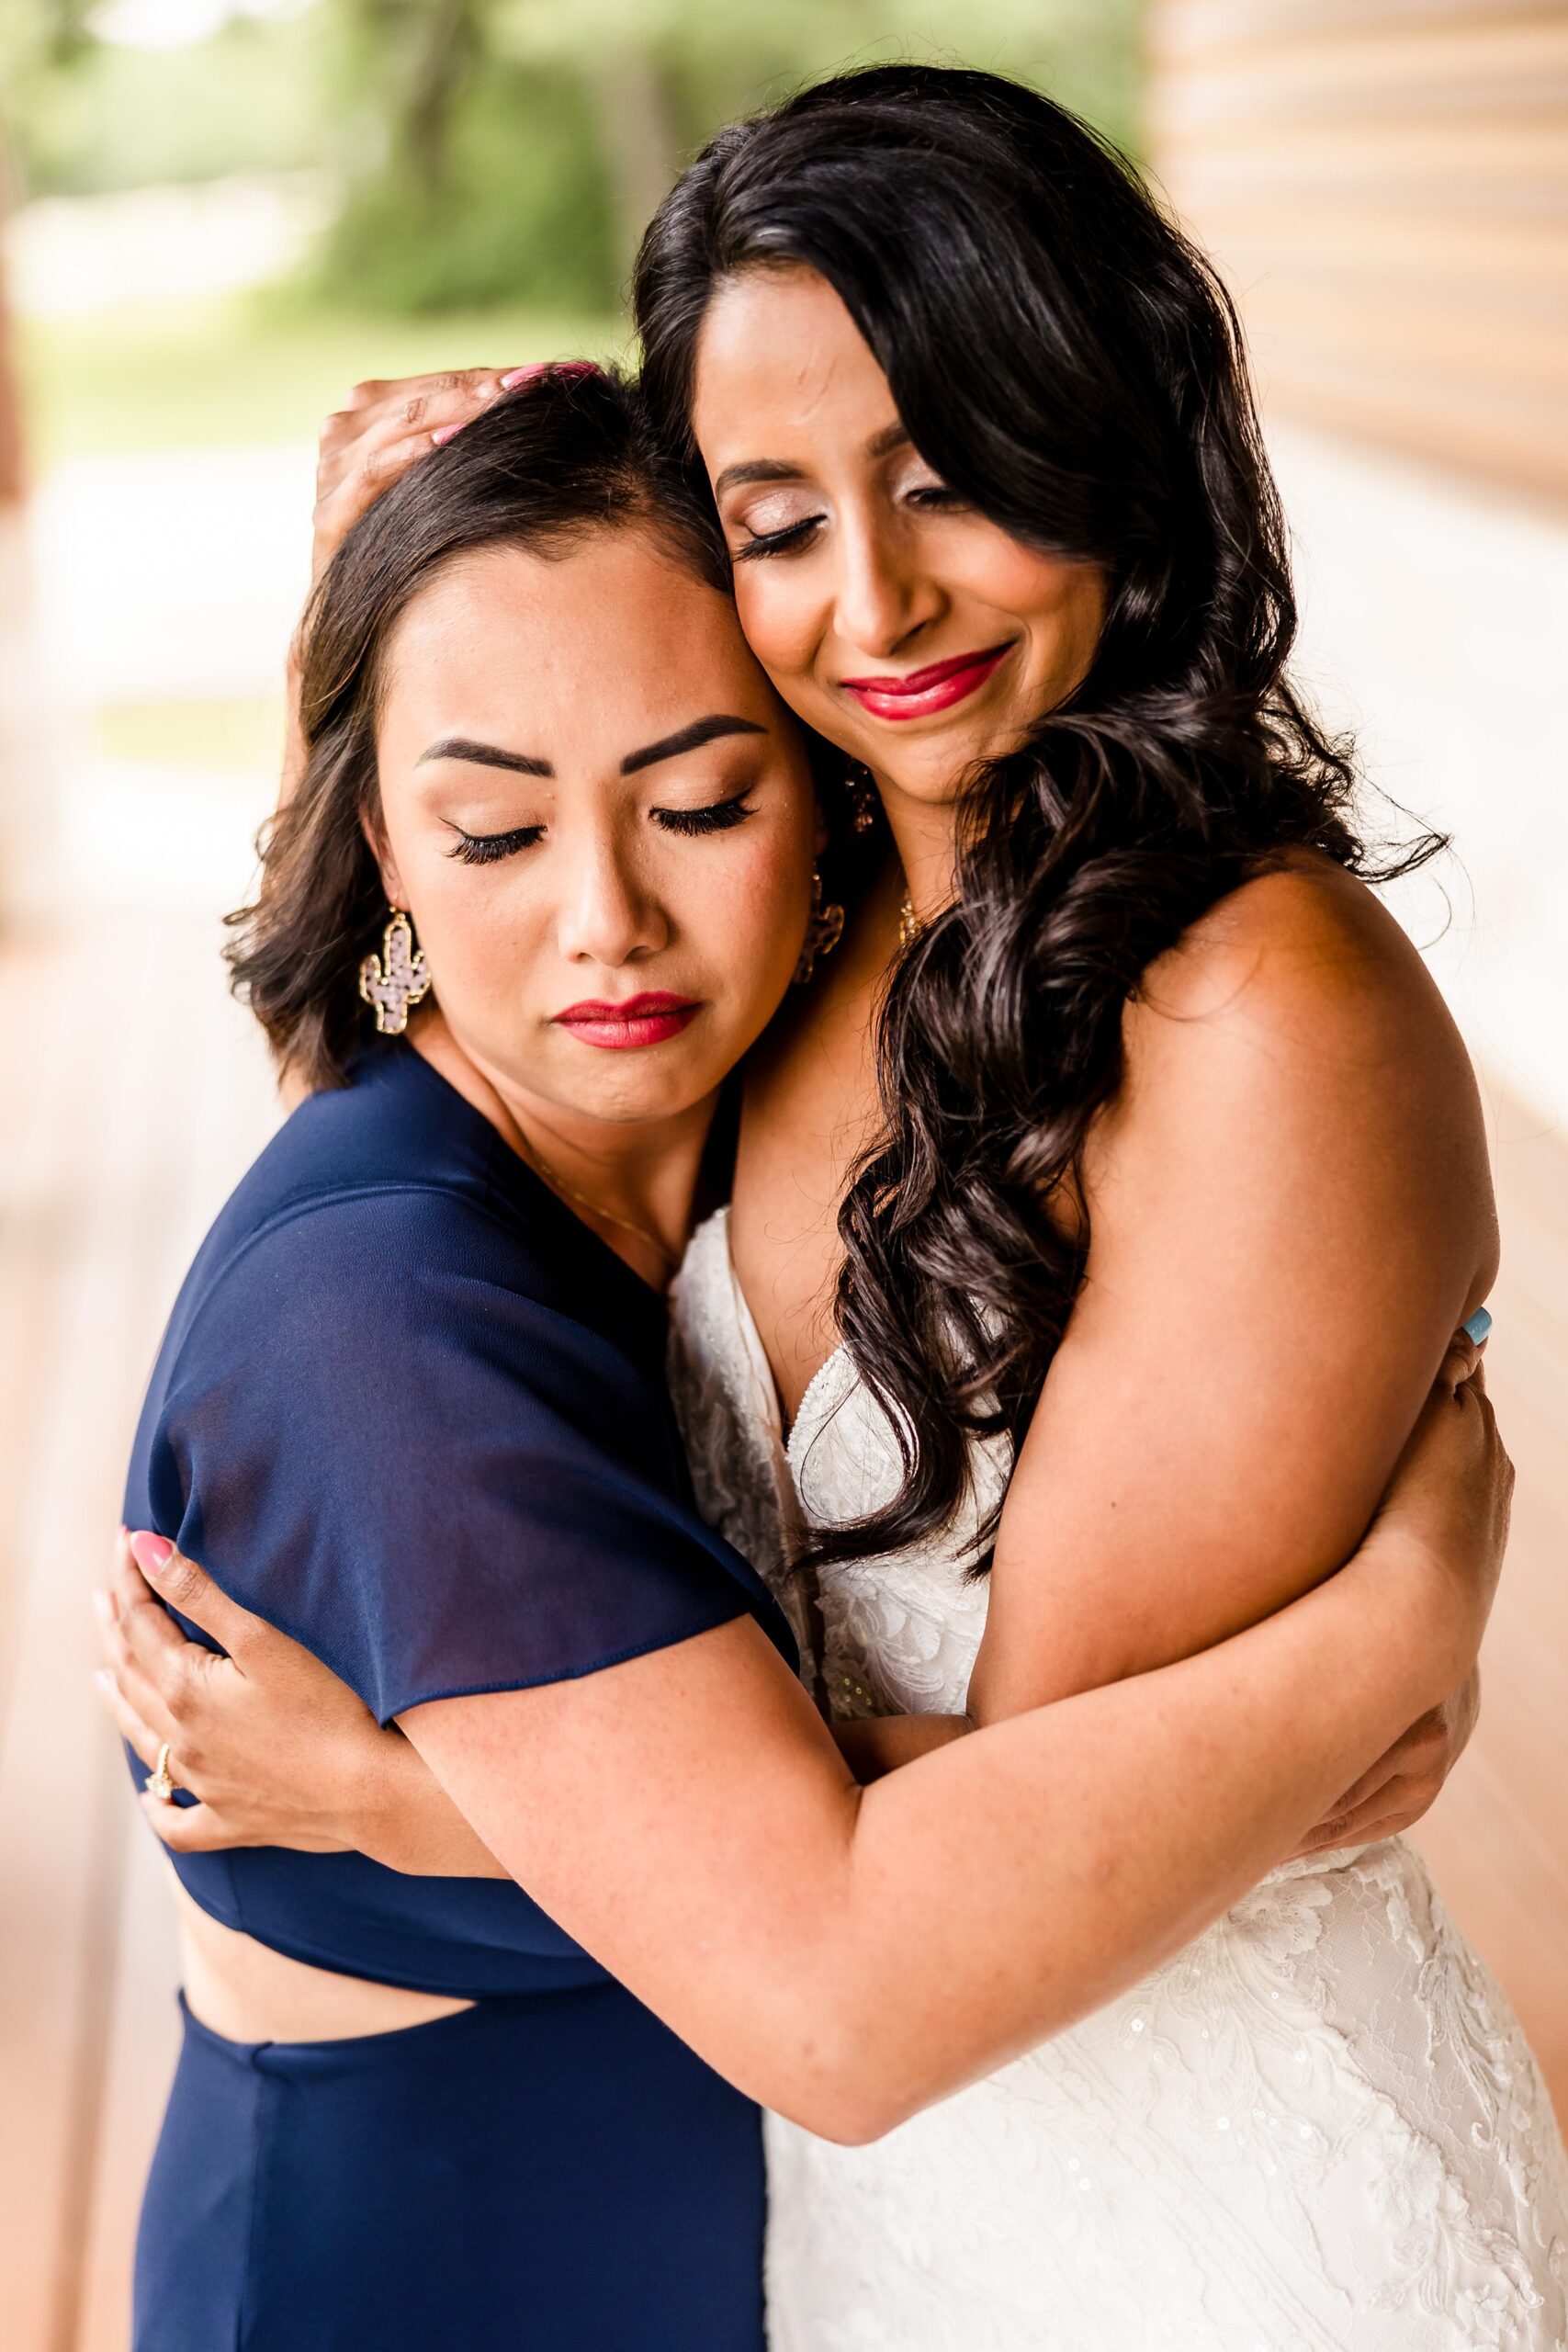 Bridesmaid and Bride hug during a wedding at the Shiraz Garden in Bastrop, Texas.